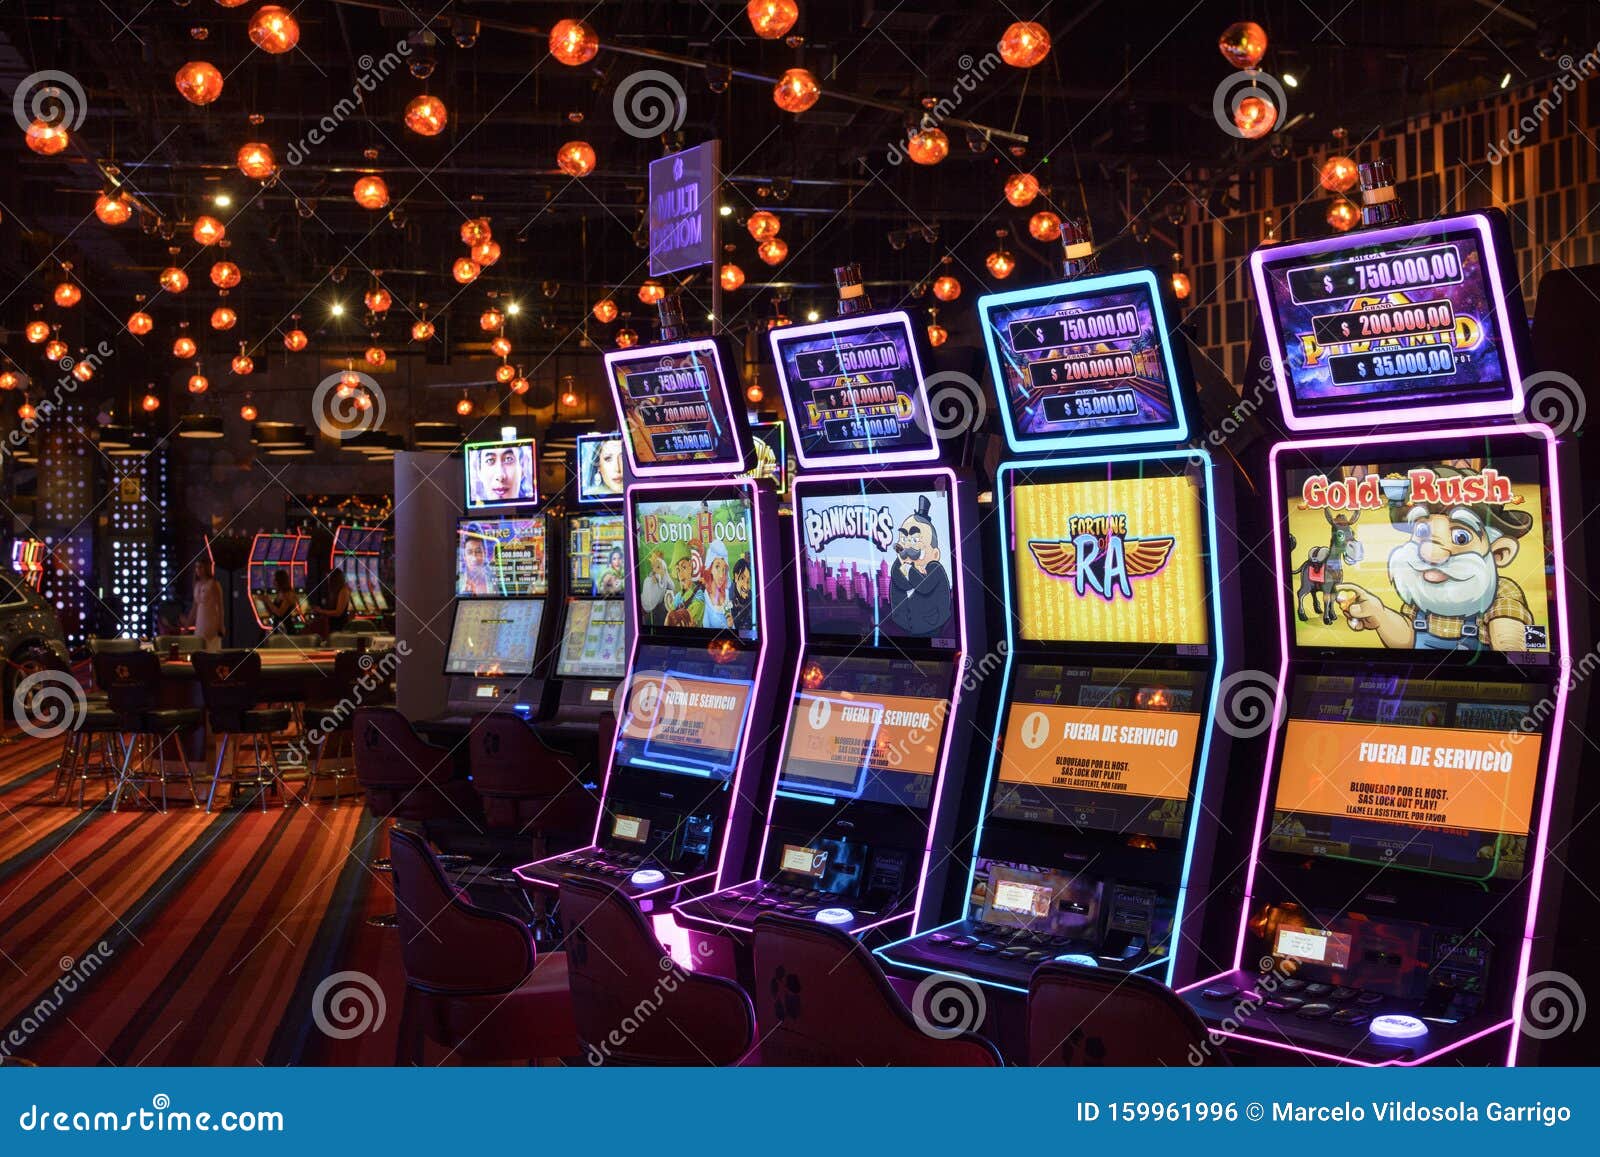 casino online Chile Oportunidades para todos